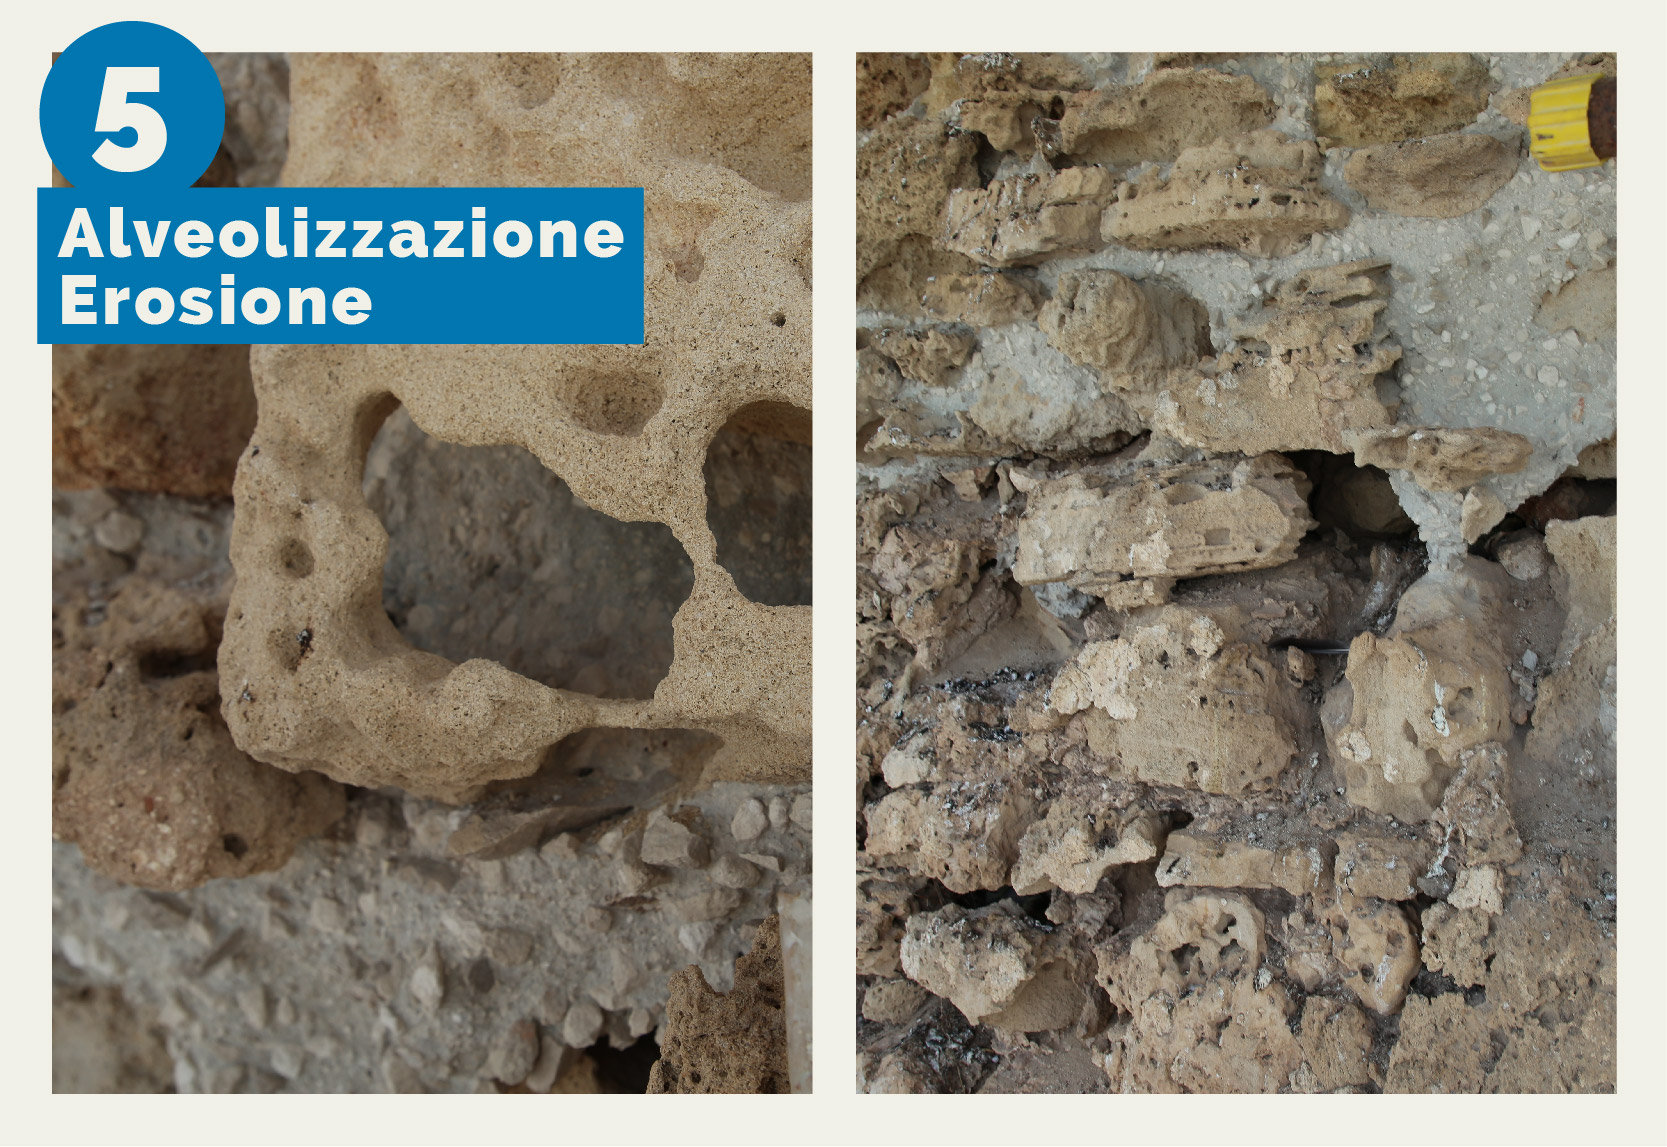 orre Mozza - L'immagine mostra il degrado della muratura esterna di Torre Mozza dovuto a fenomeni di alveolizzazione e erosione causati dagli agenti atmosferici e dalle caratteristiche intrinseche dei materiali